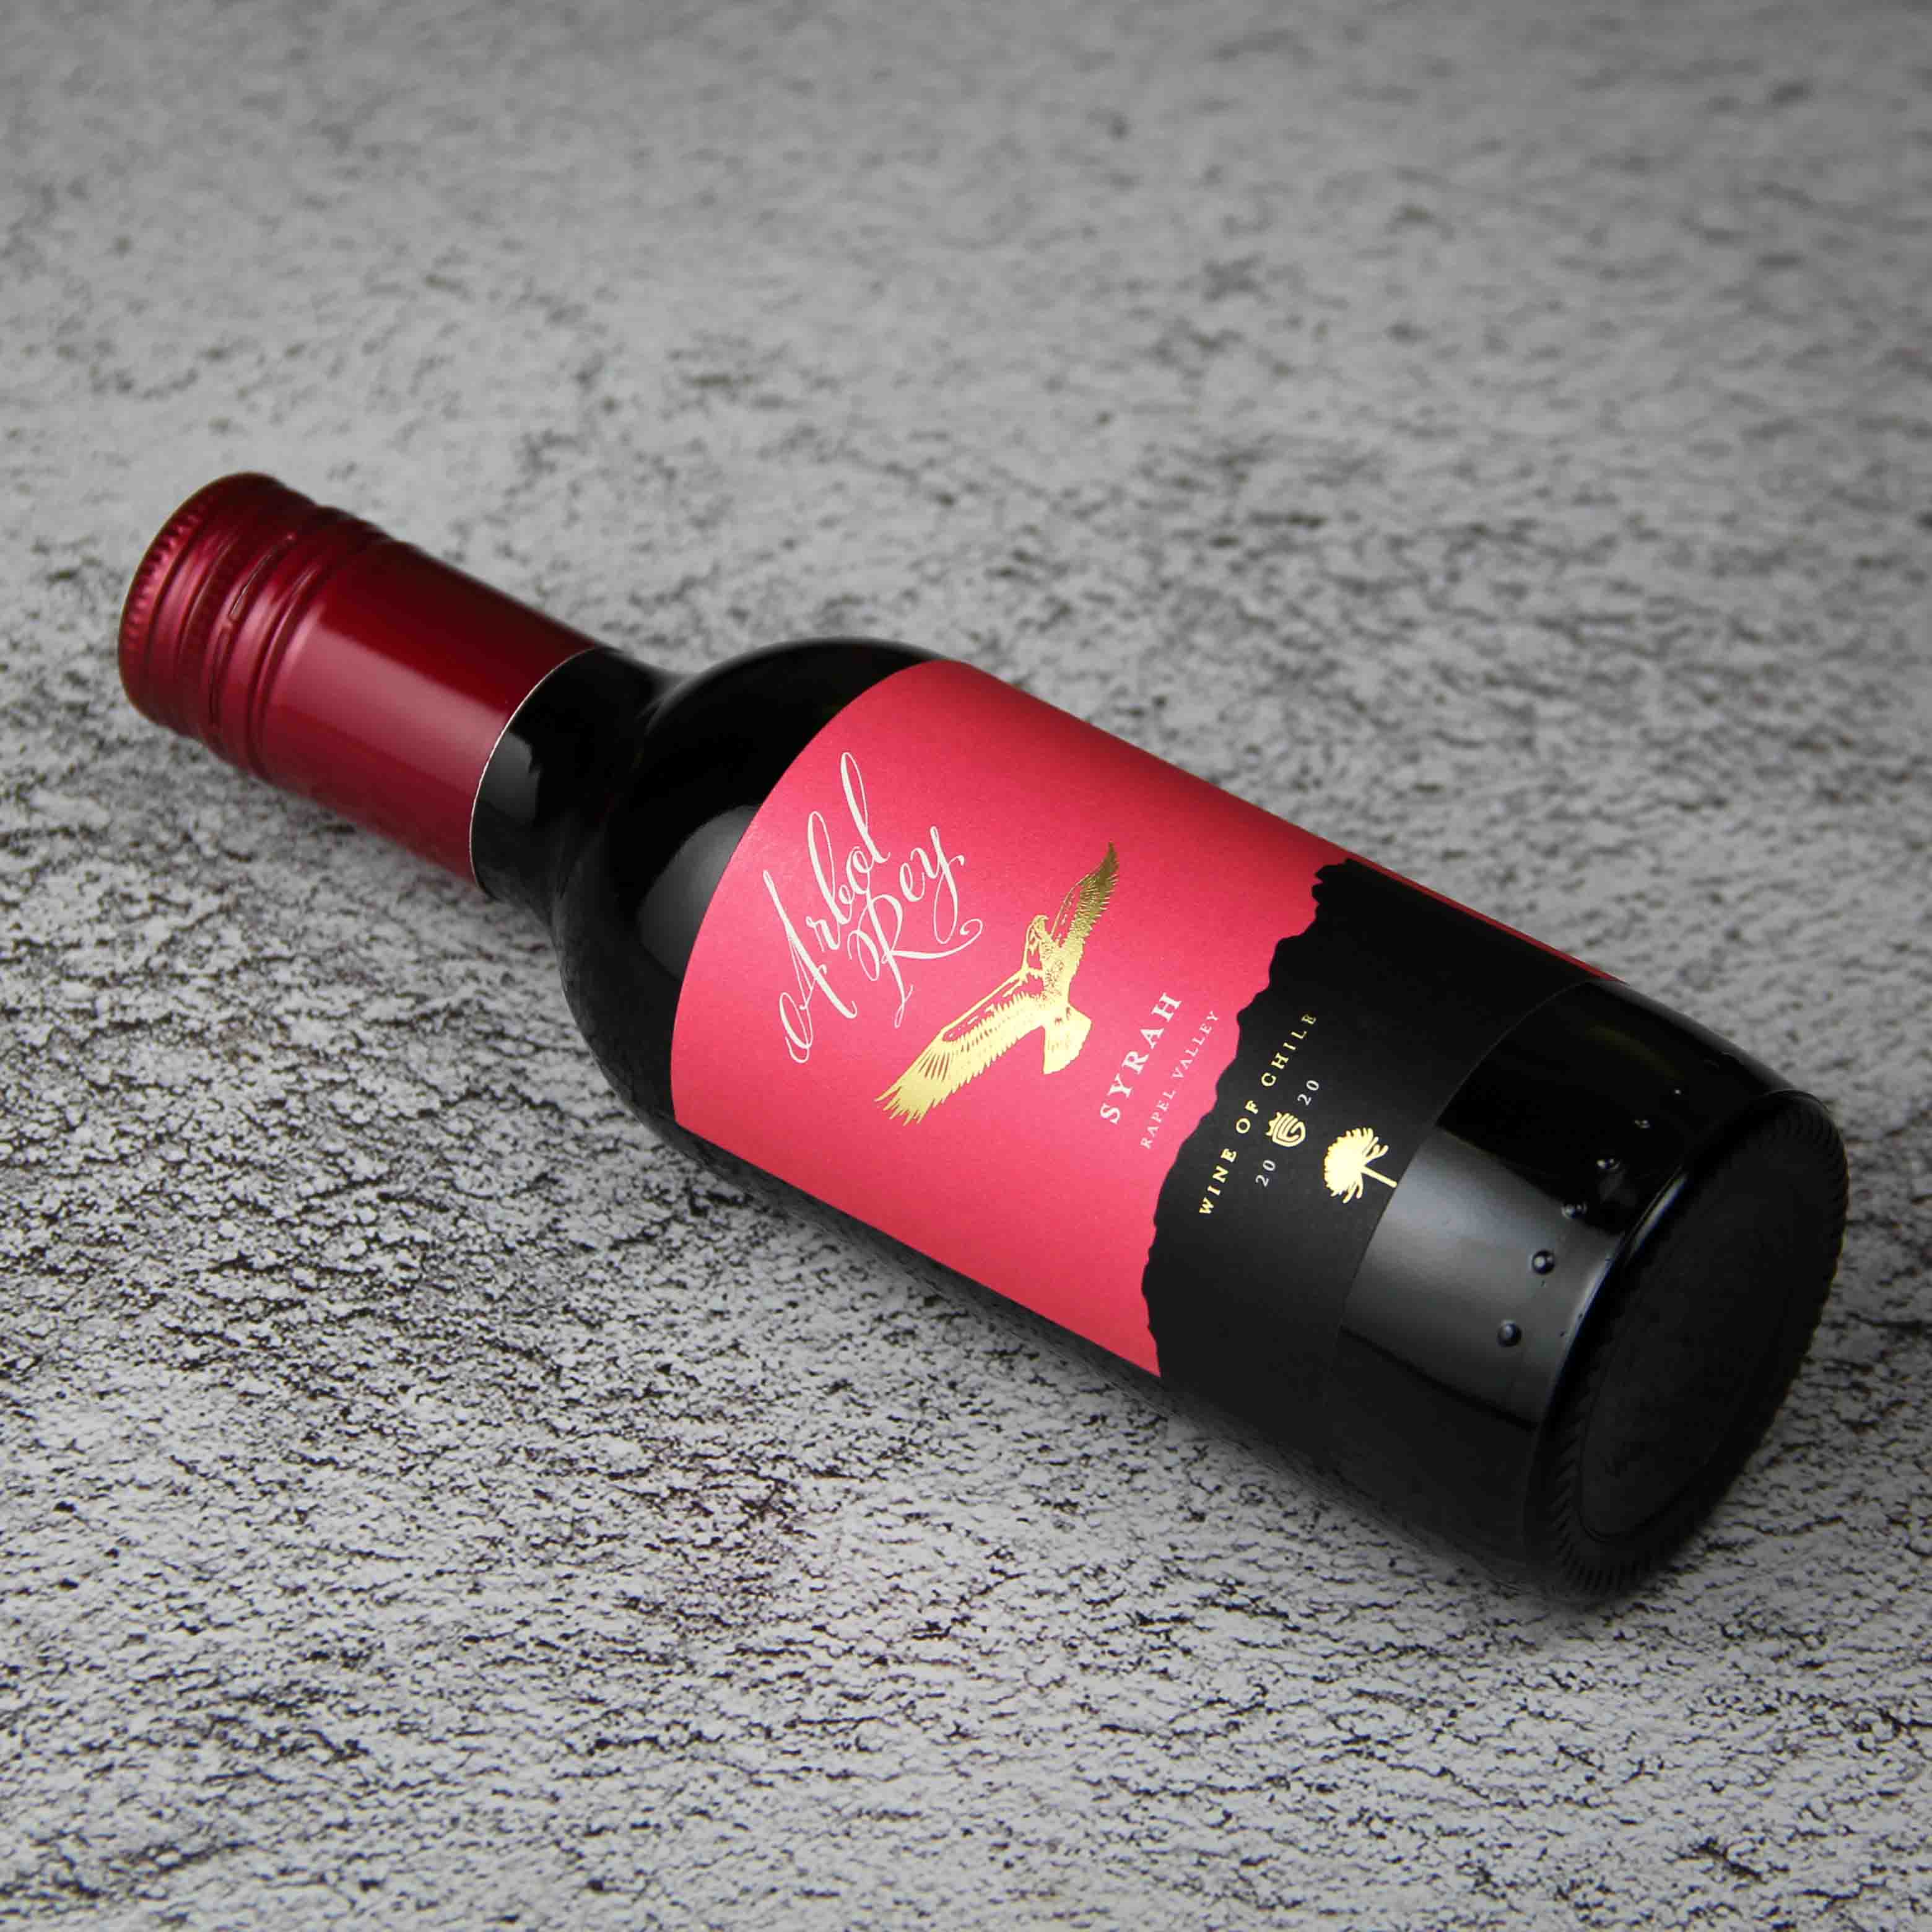 智利拉佩尔谷森林之王经典西拉干红葡萄酒187.5ml